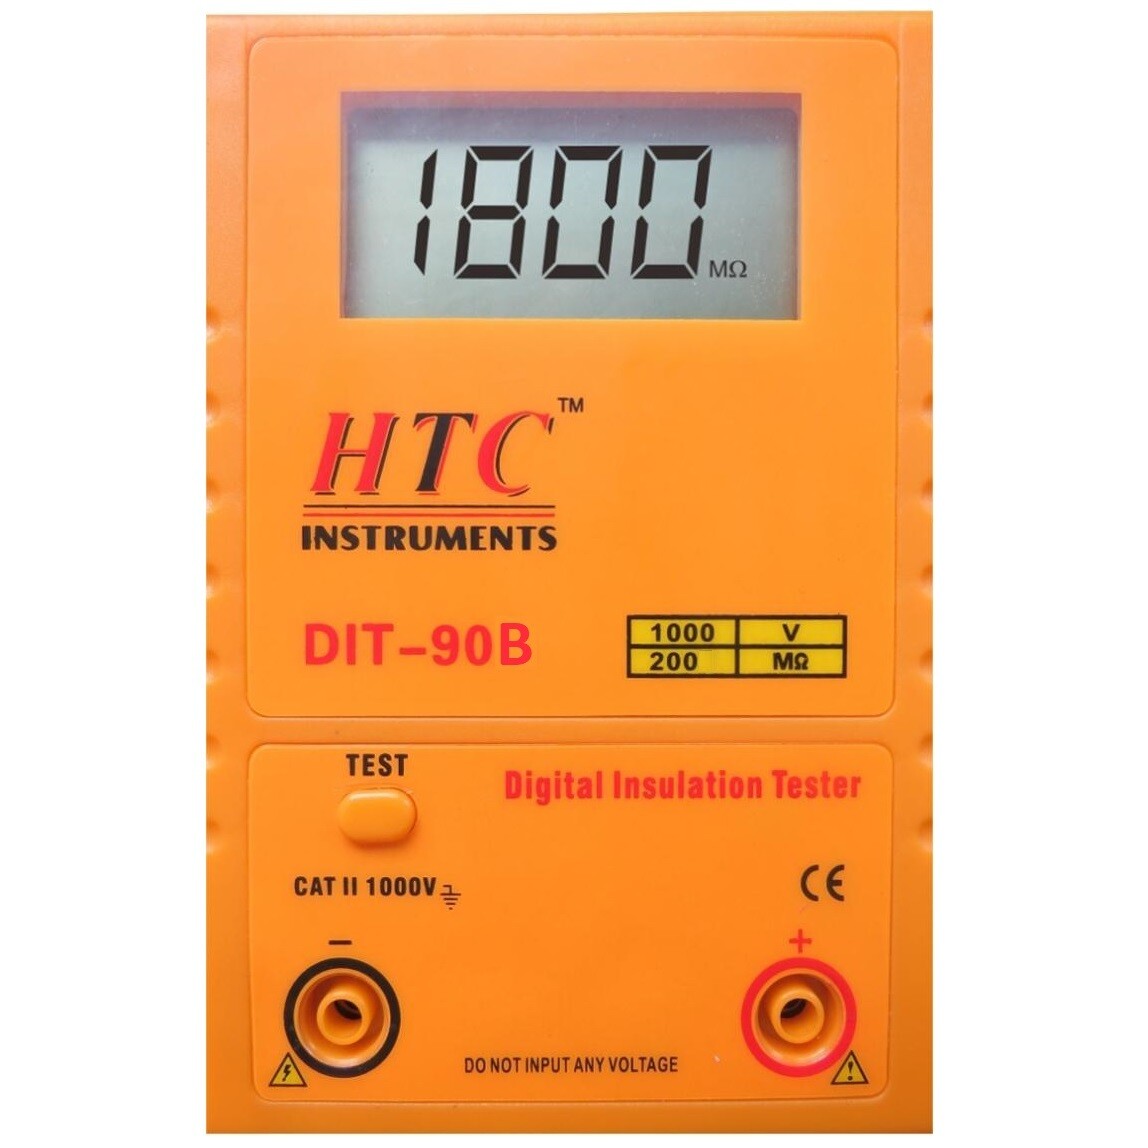 HTC DIT-90B Digital Insulation Tester 1000V - 200MOhms